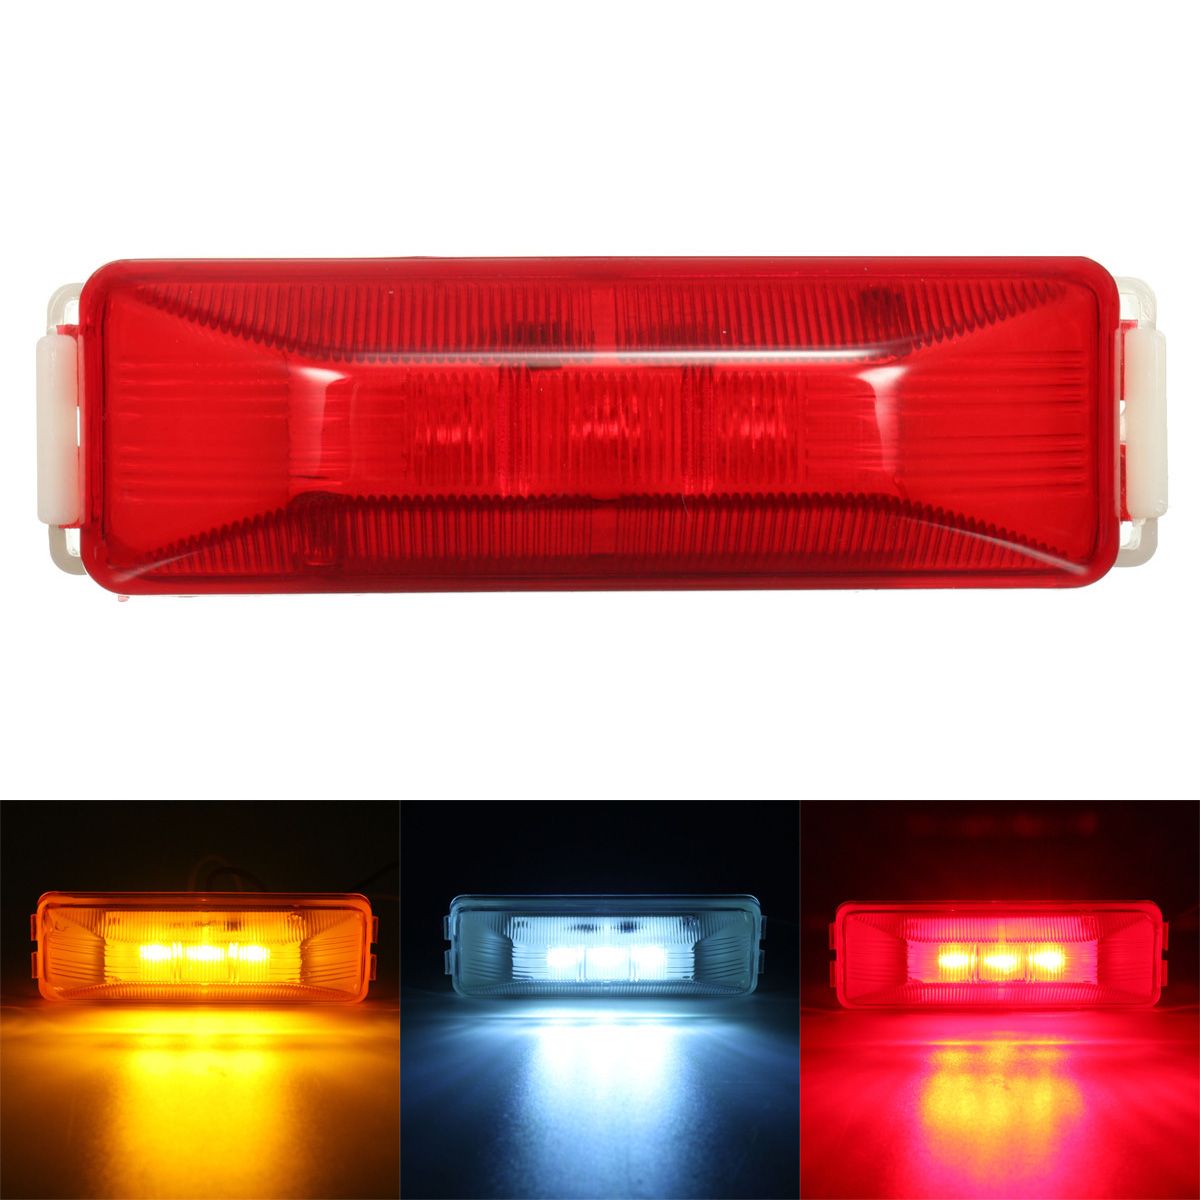 3-LED-12V-Truck-Trailer-Lorry-Side-Marker-Light-Lamp-Red-Amber-White-1058023